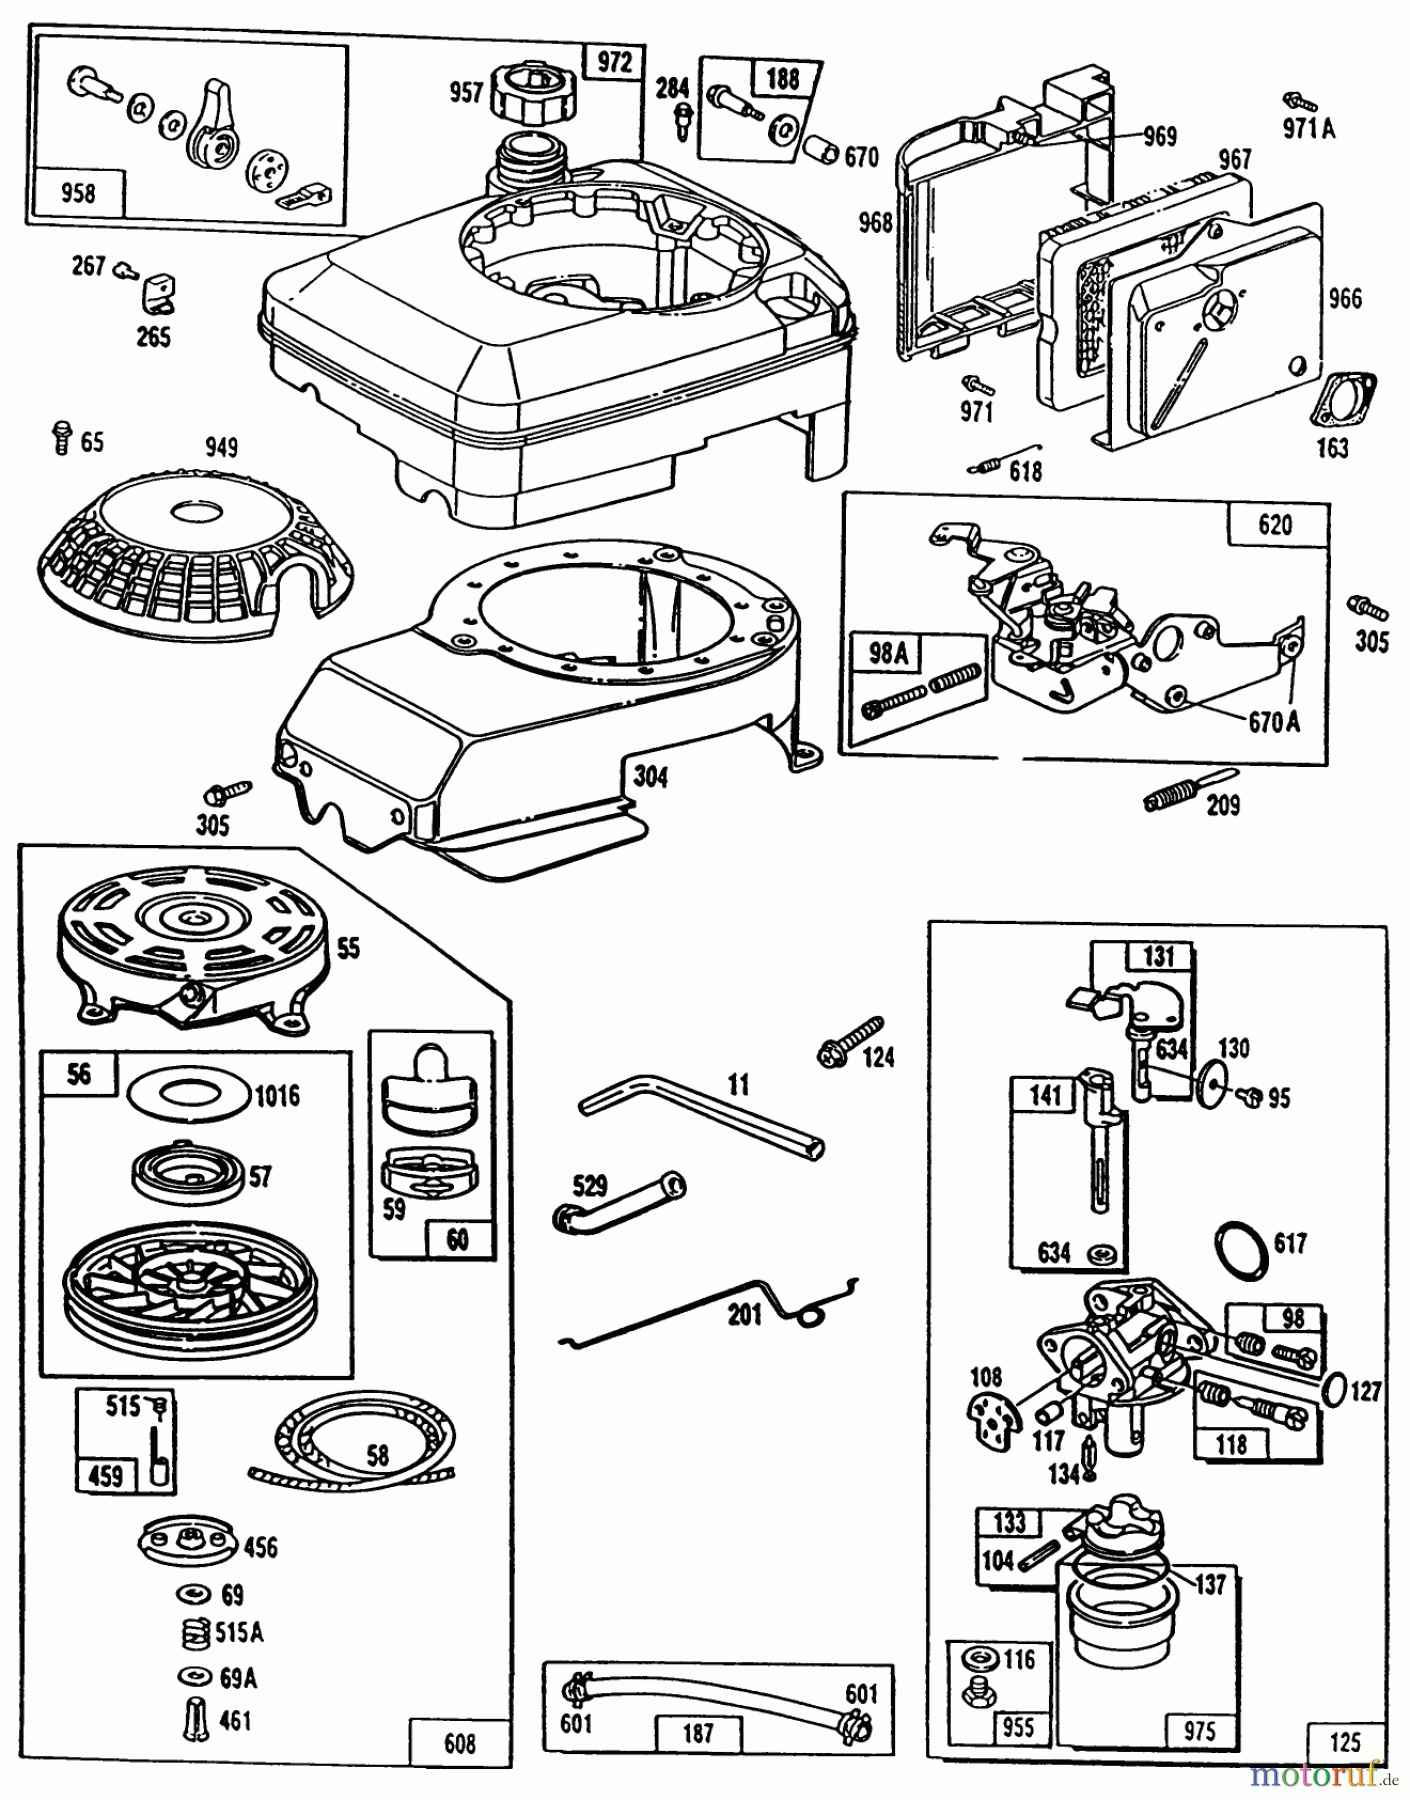  Toro Neu Mowers, Walk-Behind Seite 1 20563 - Toro Lawnmower, 1990 (0000001-0999999) ENGINE BRIGGS & STRATTON MODEL NO. 124702-3115-01 #2